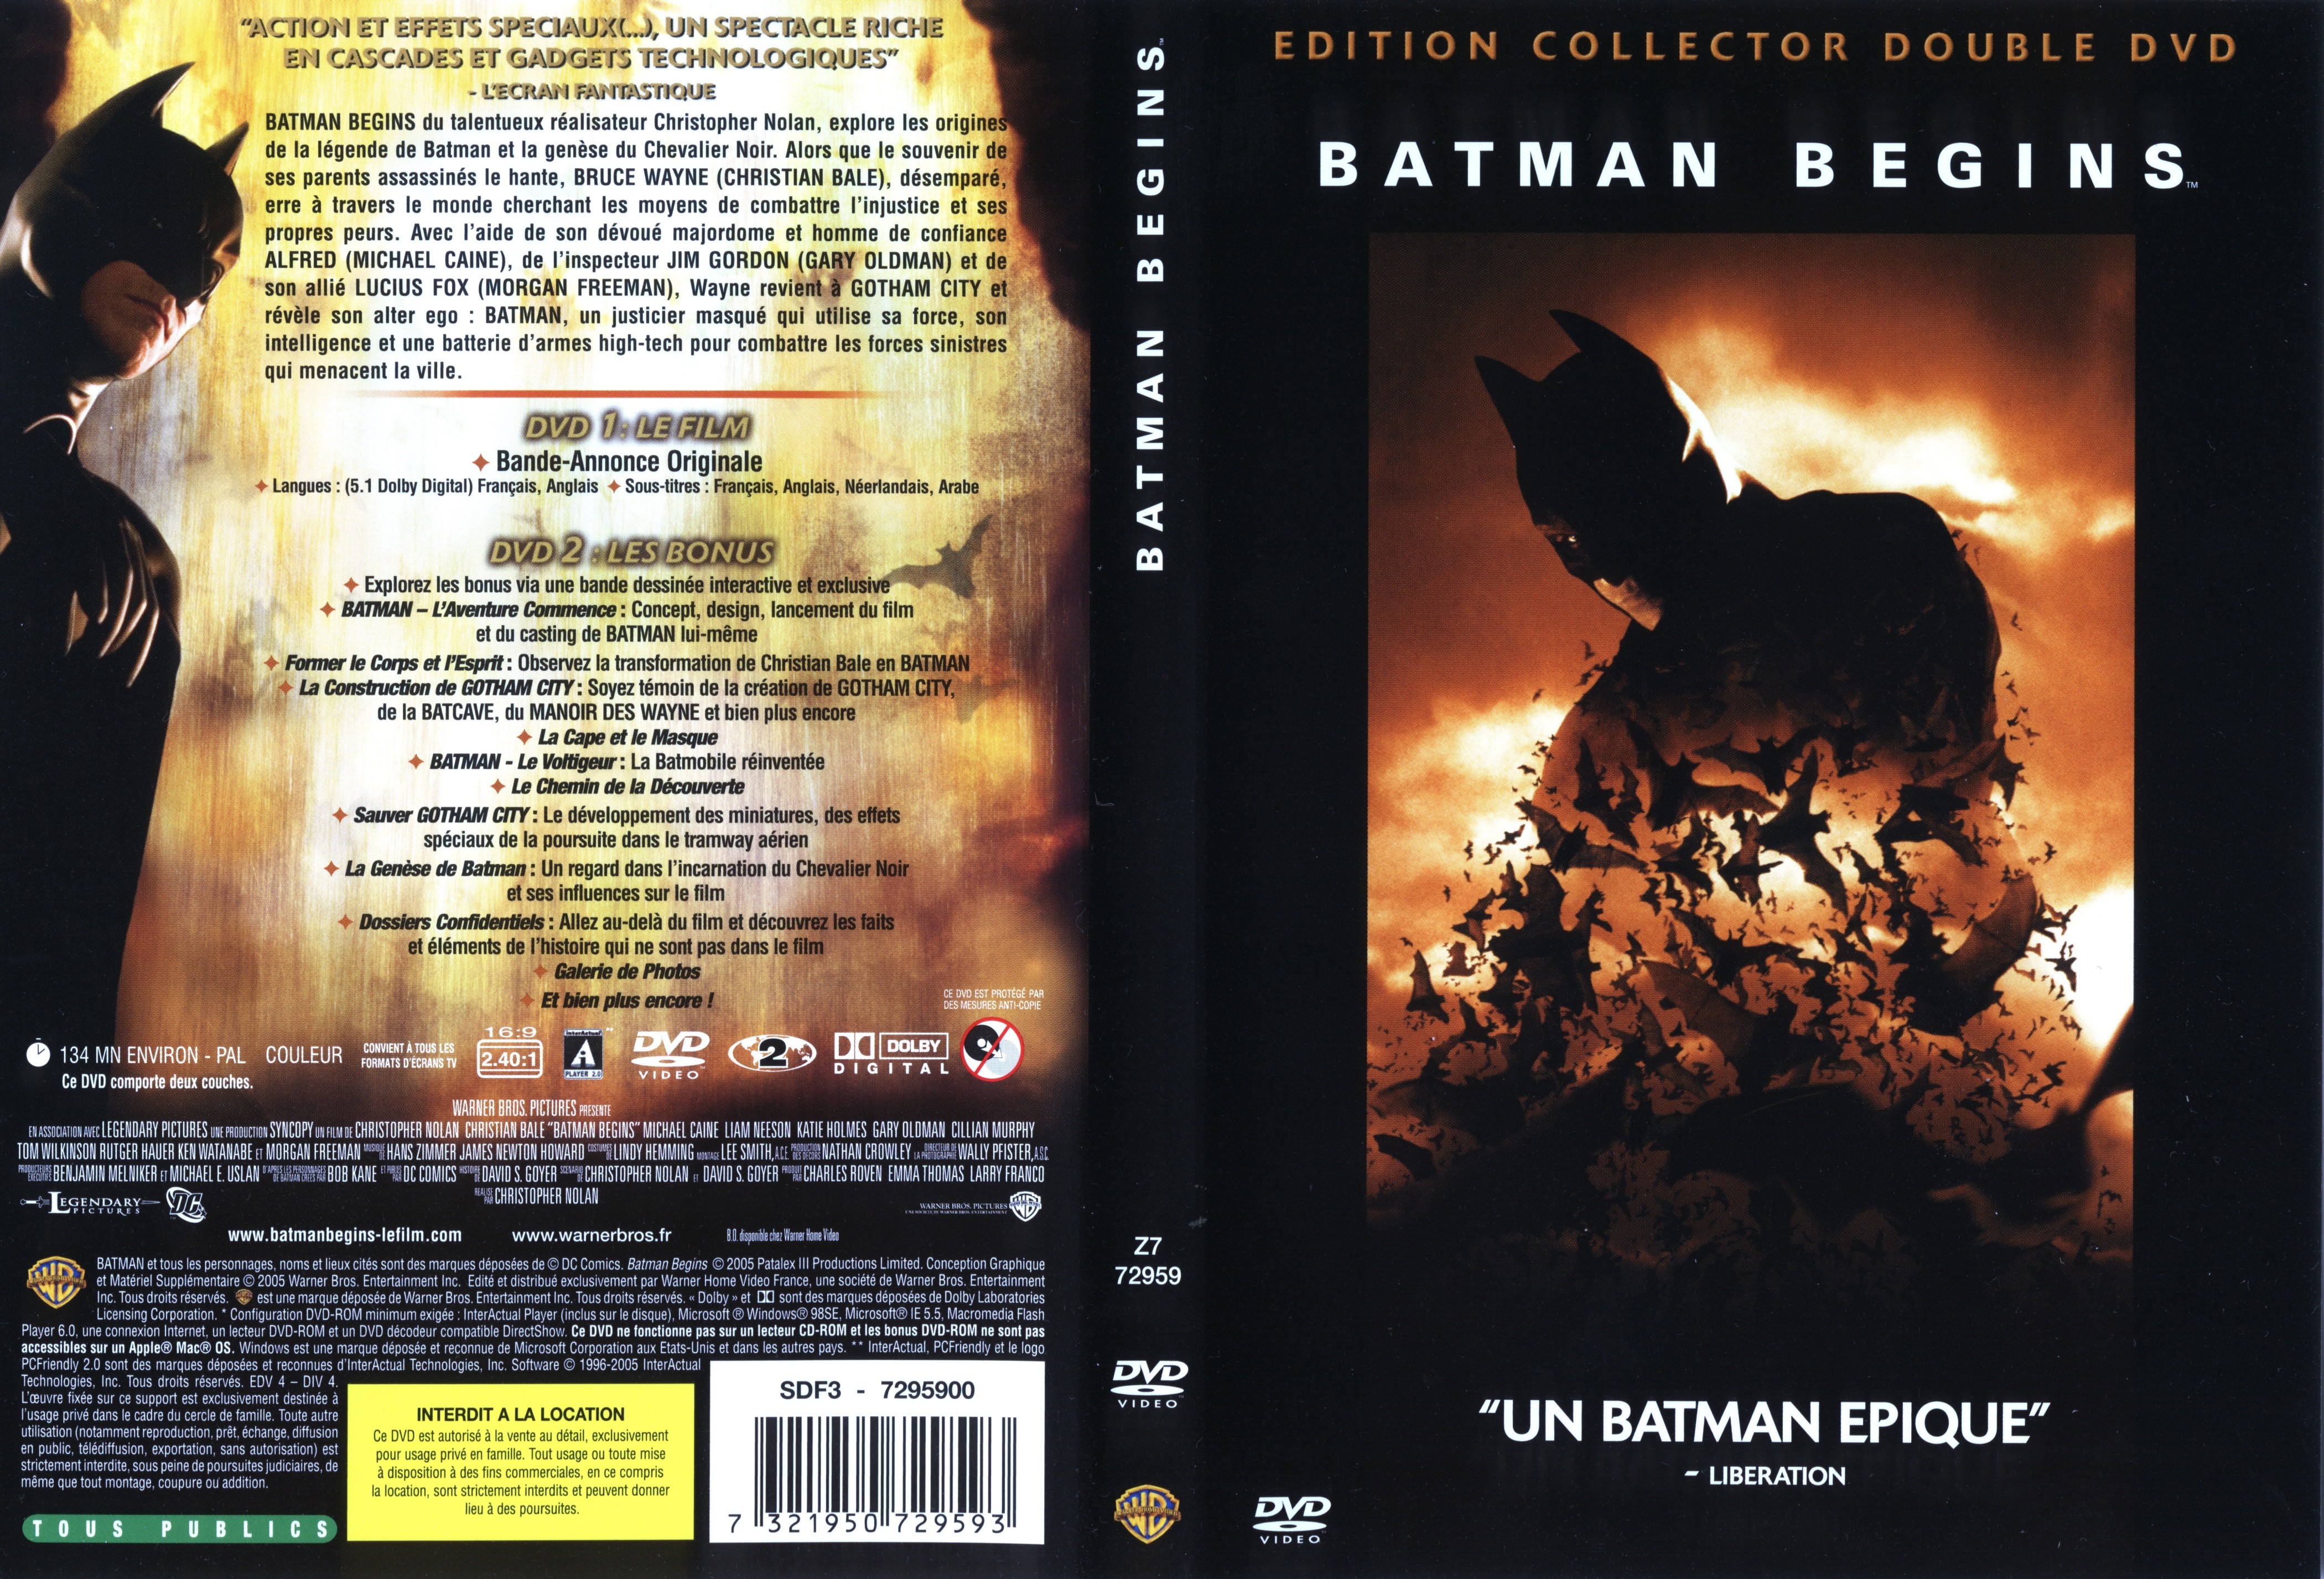 Jaquette DVD Batman begins v2